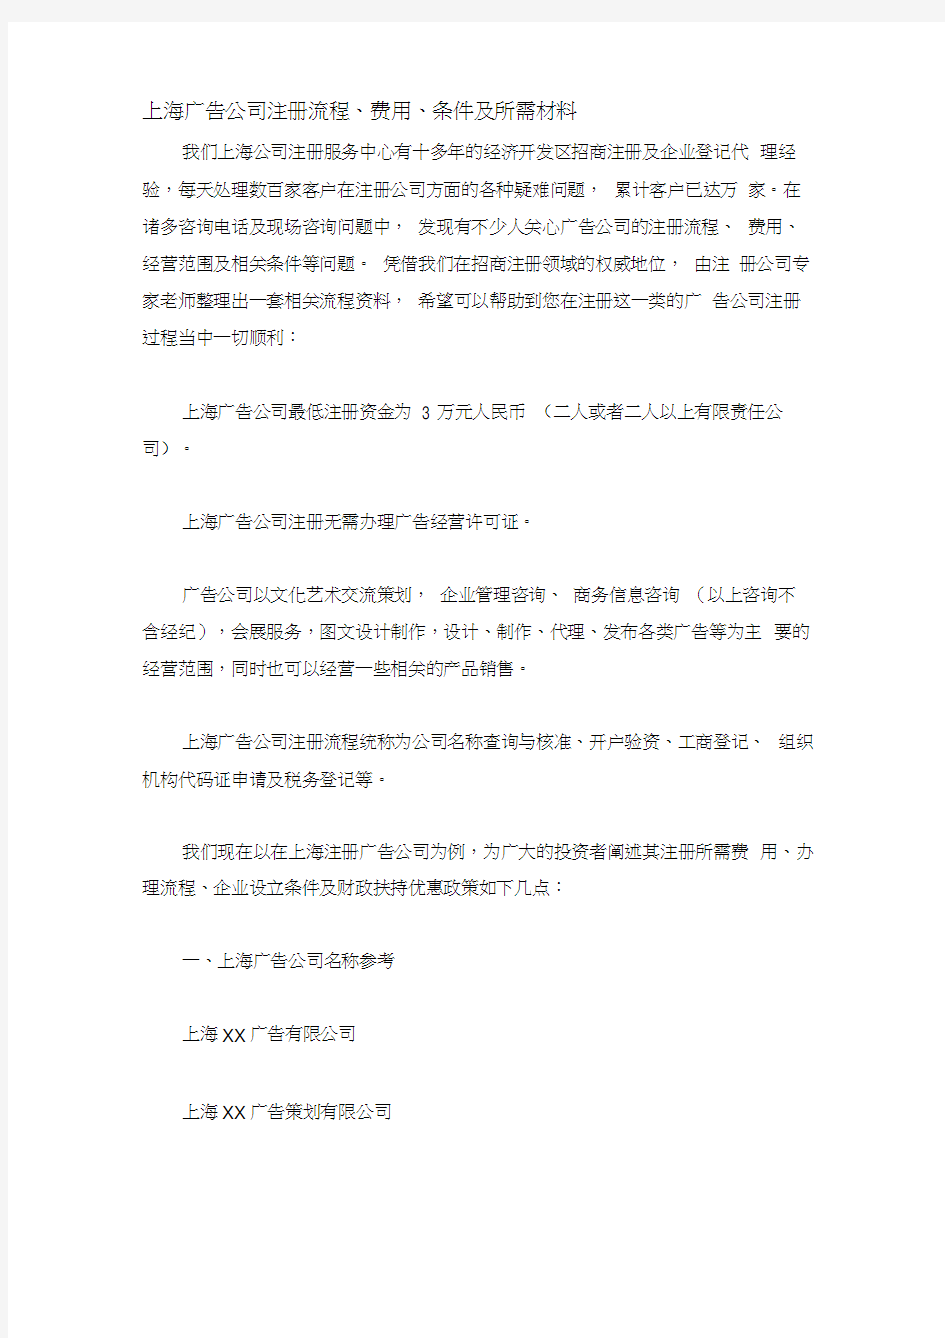 上海广告公司注册流程、费用、条件及所需材料